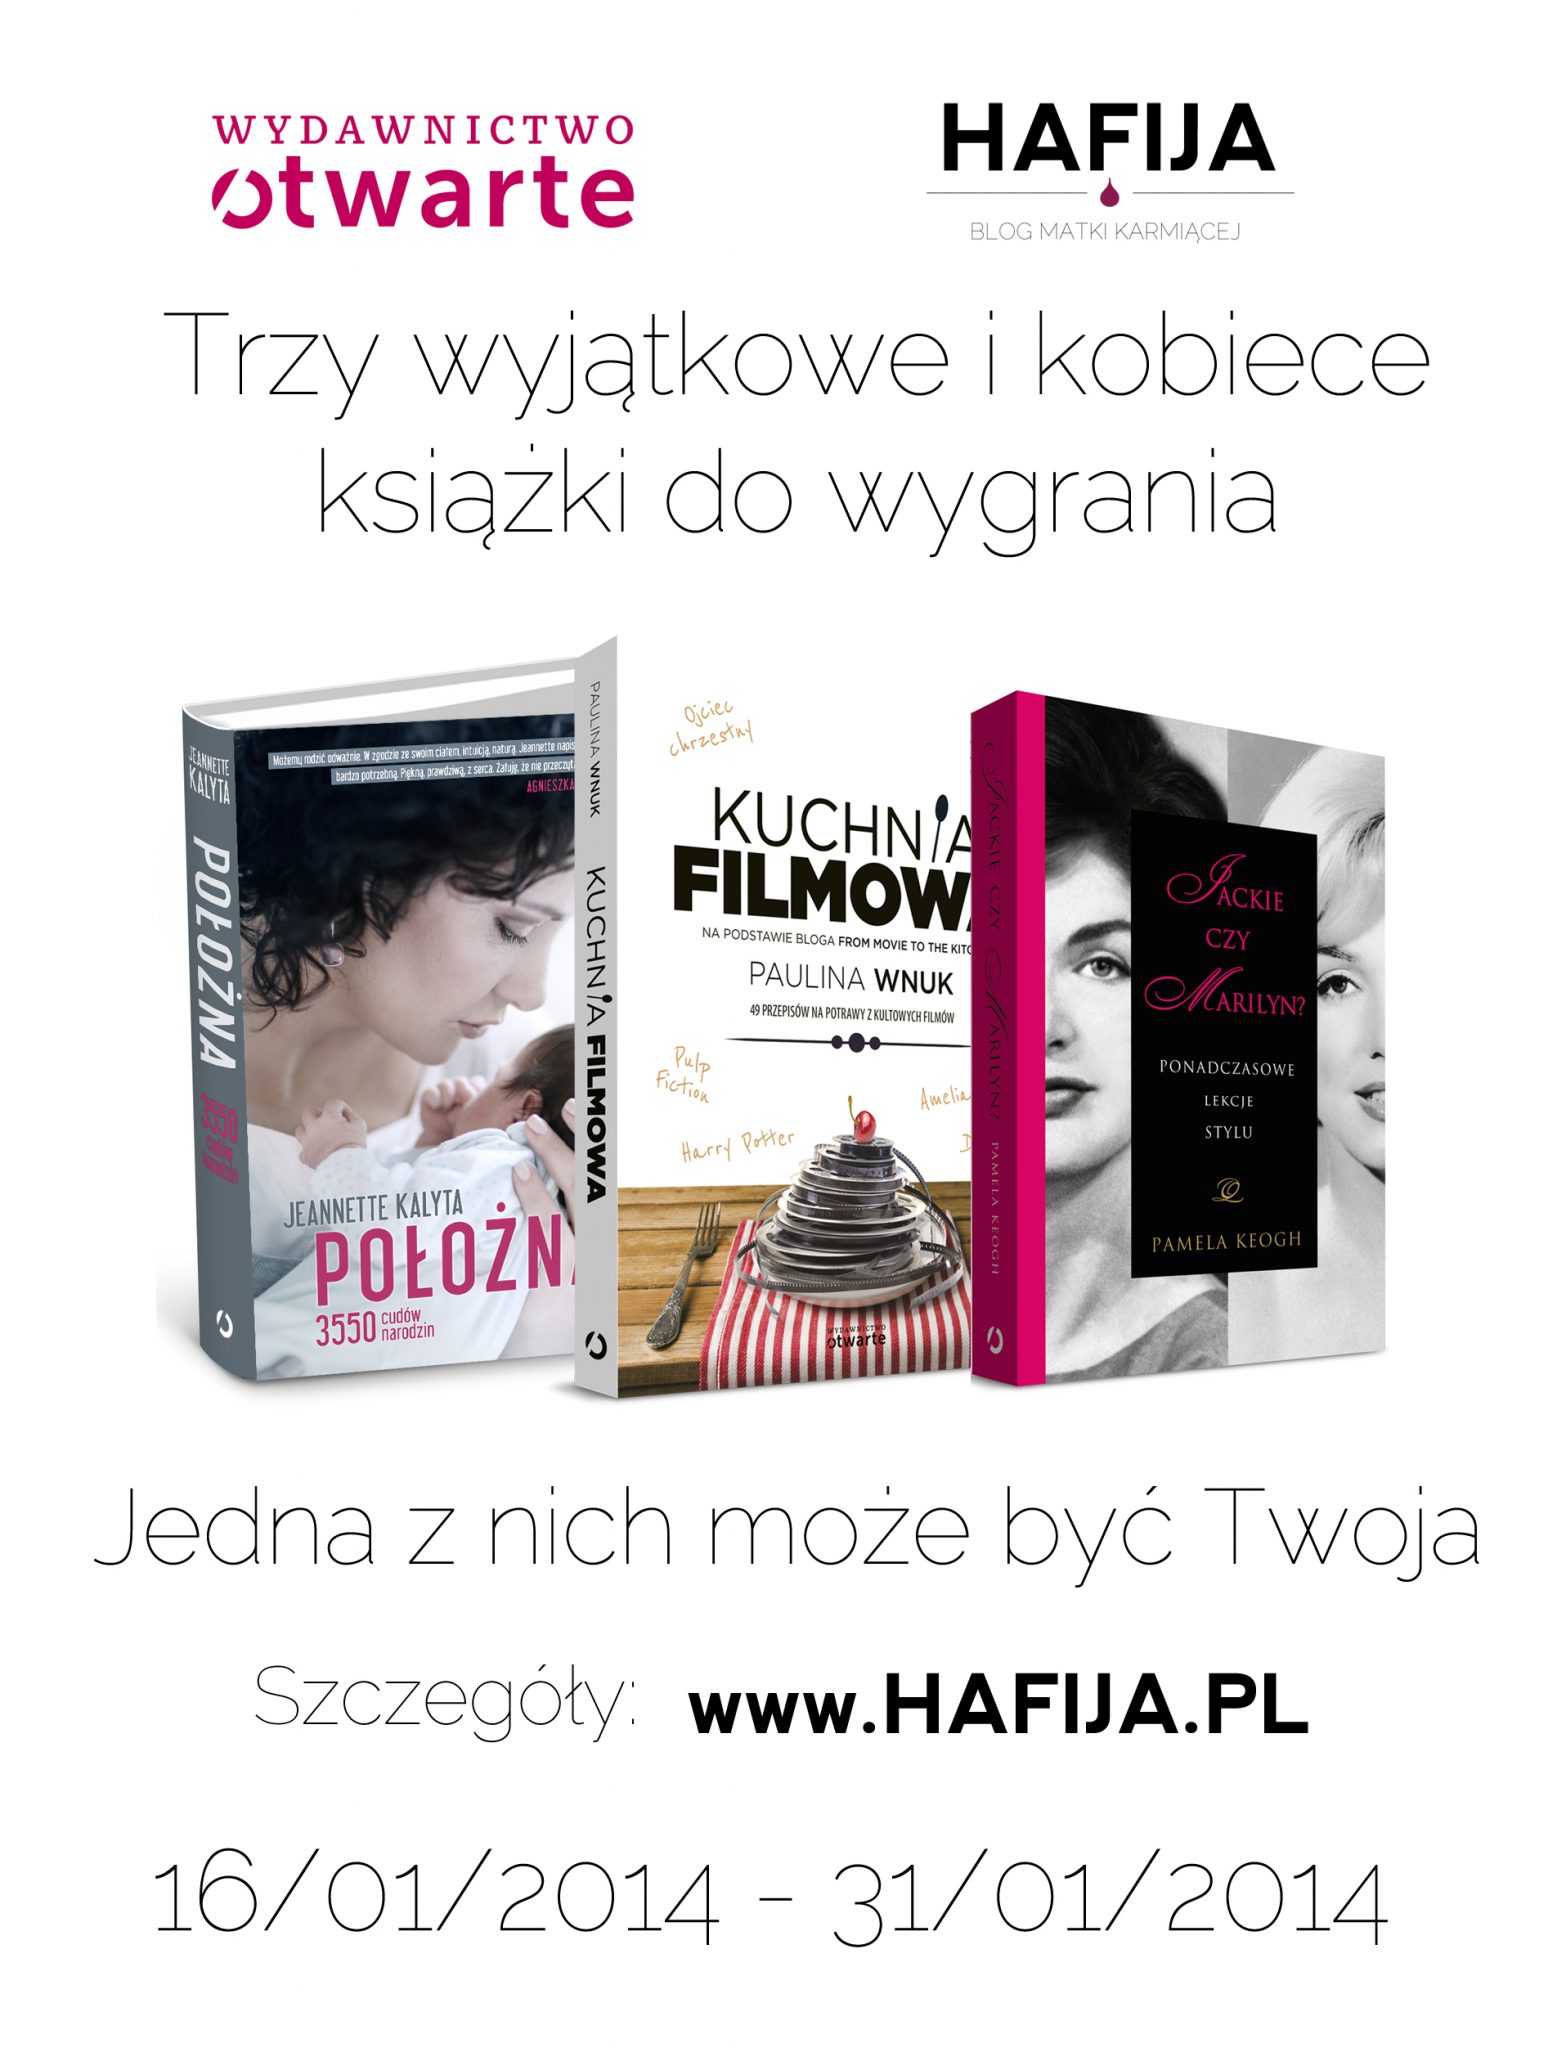 Konkurs kobiecy na hafija.pl